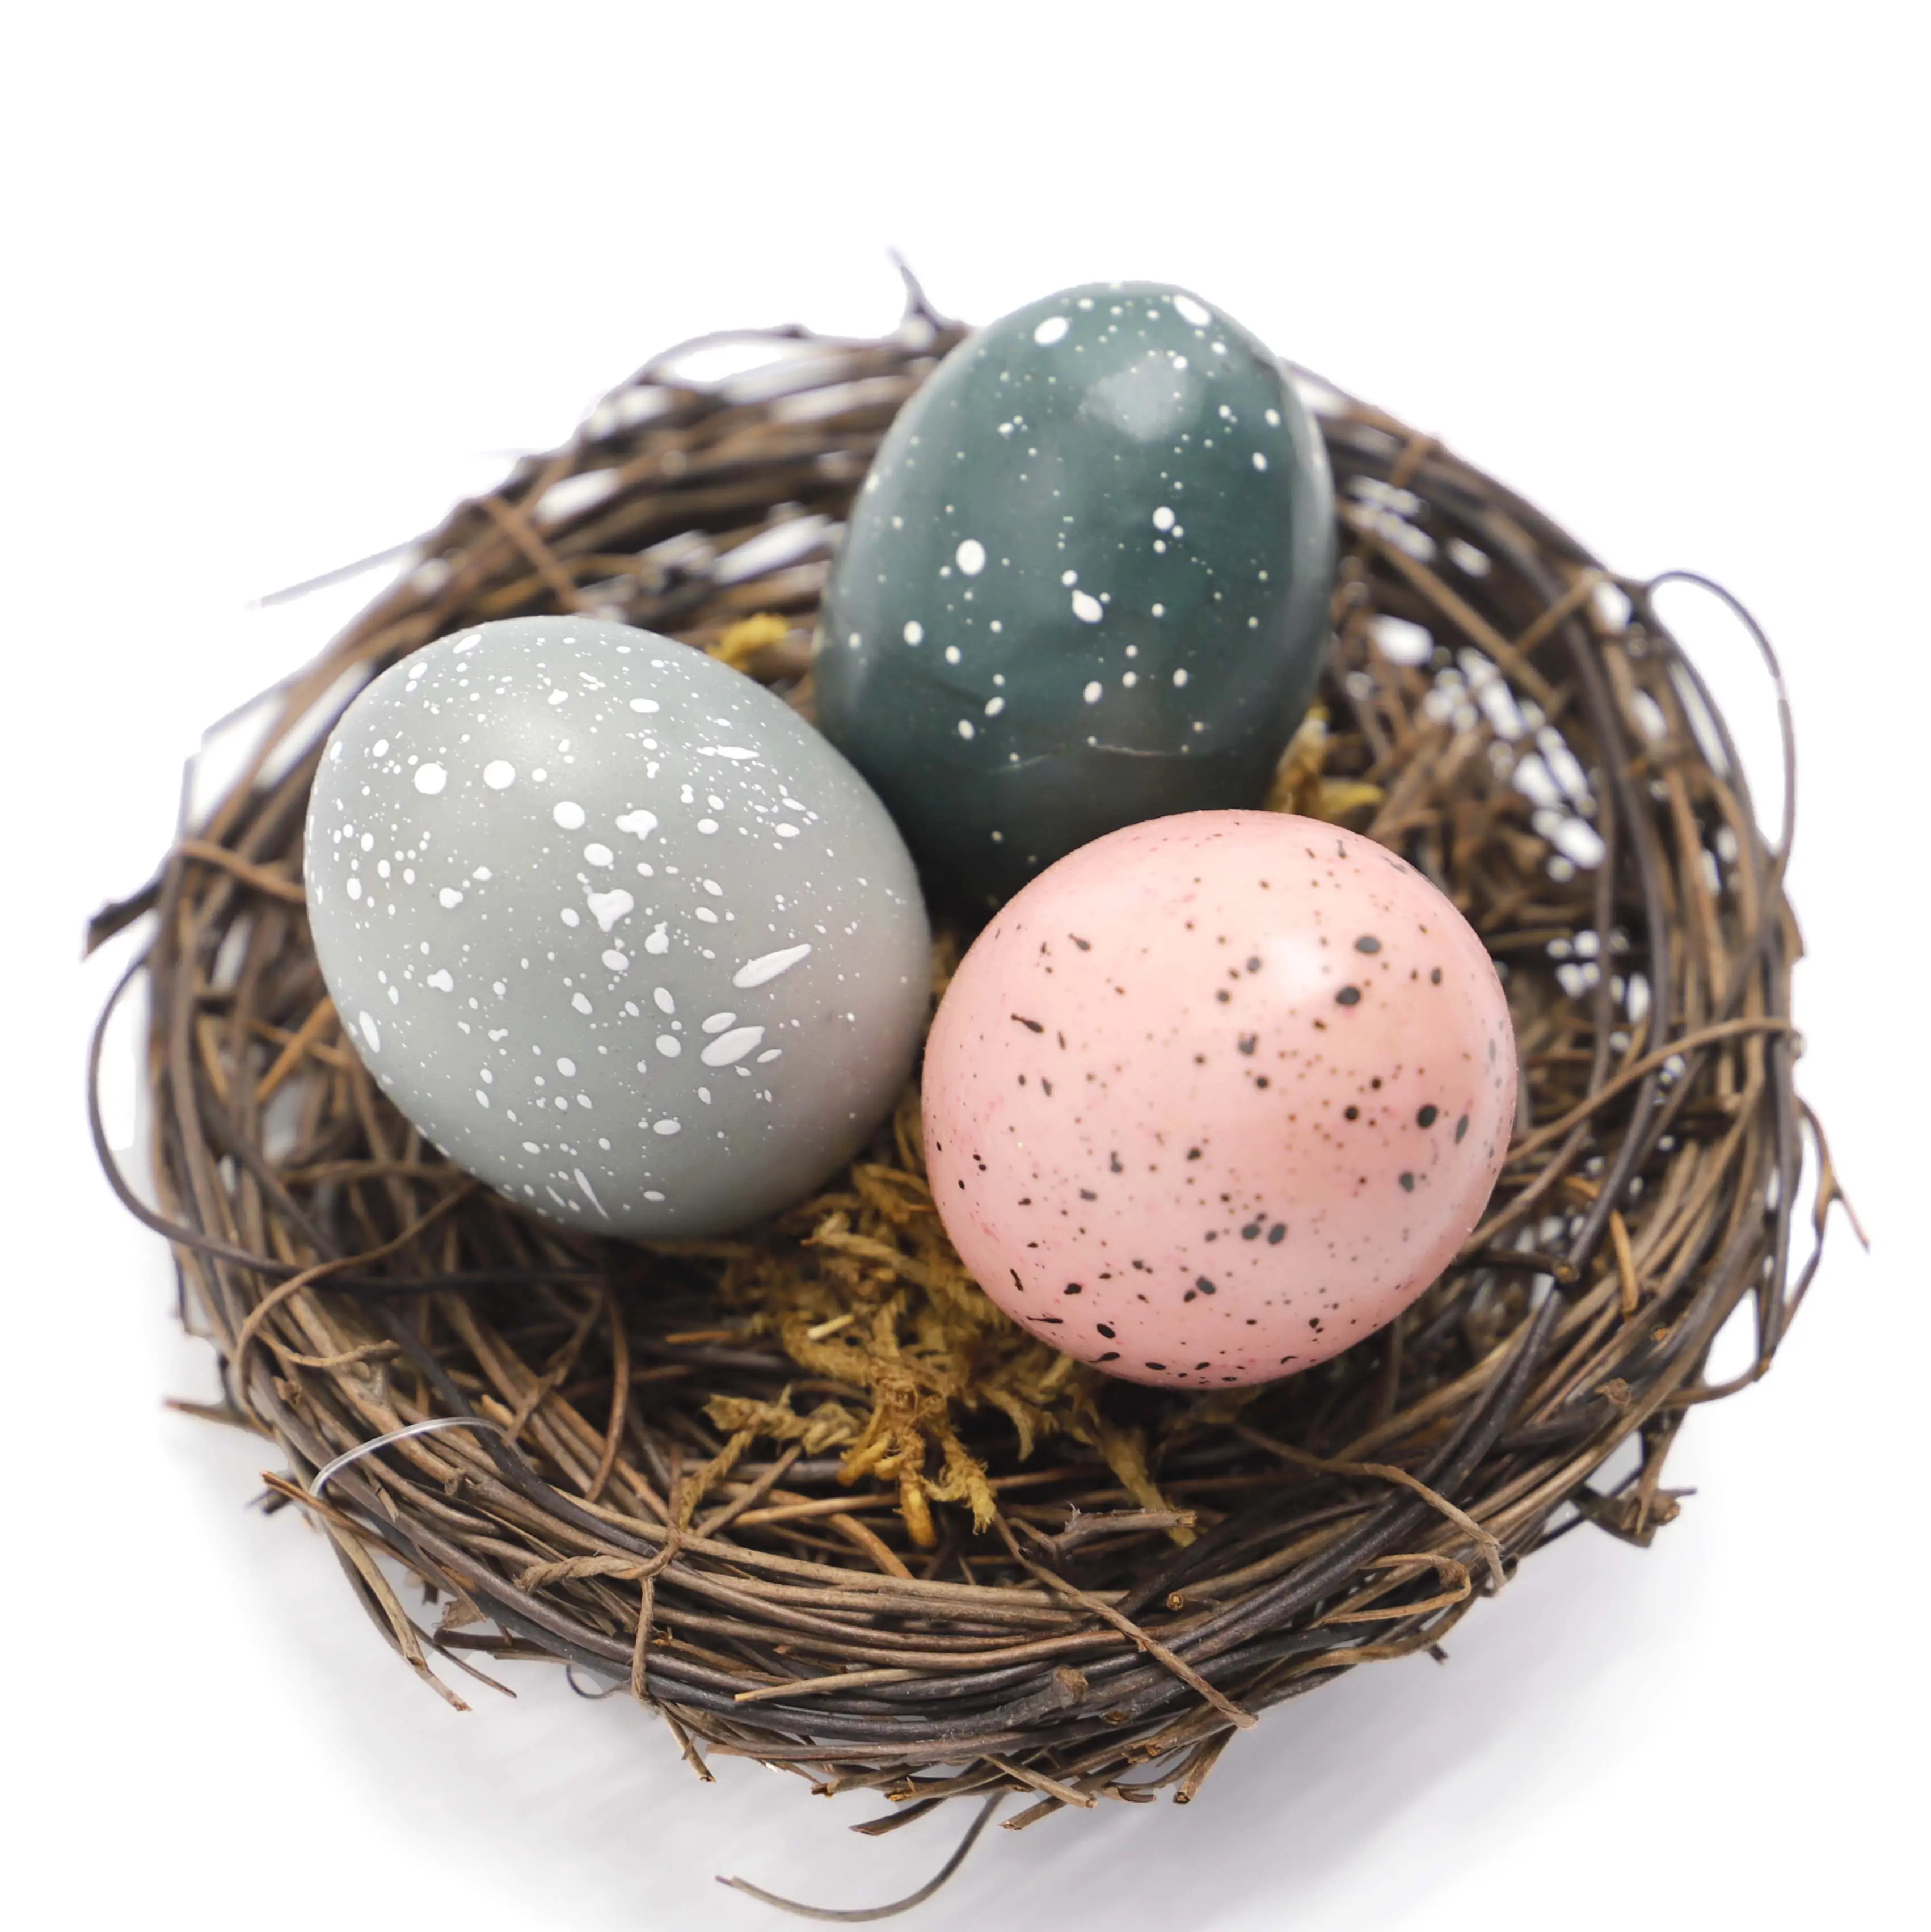 Nid d'oiseau artificiel fait à la main, 50 cm, avec œuf pour décoration de pâques pour enfants, jardin, cour, fête à domicile, décoratifs